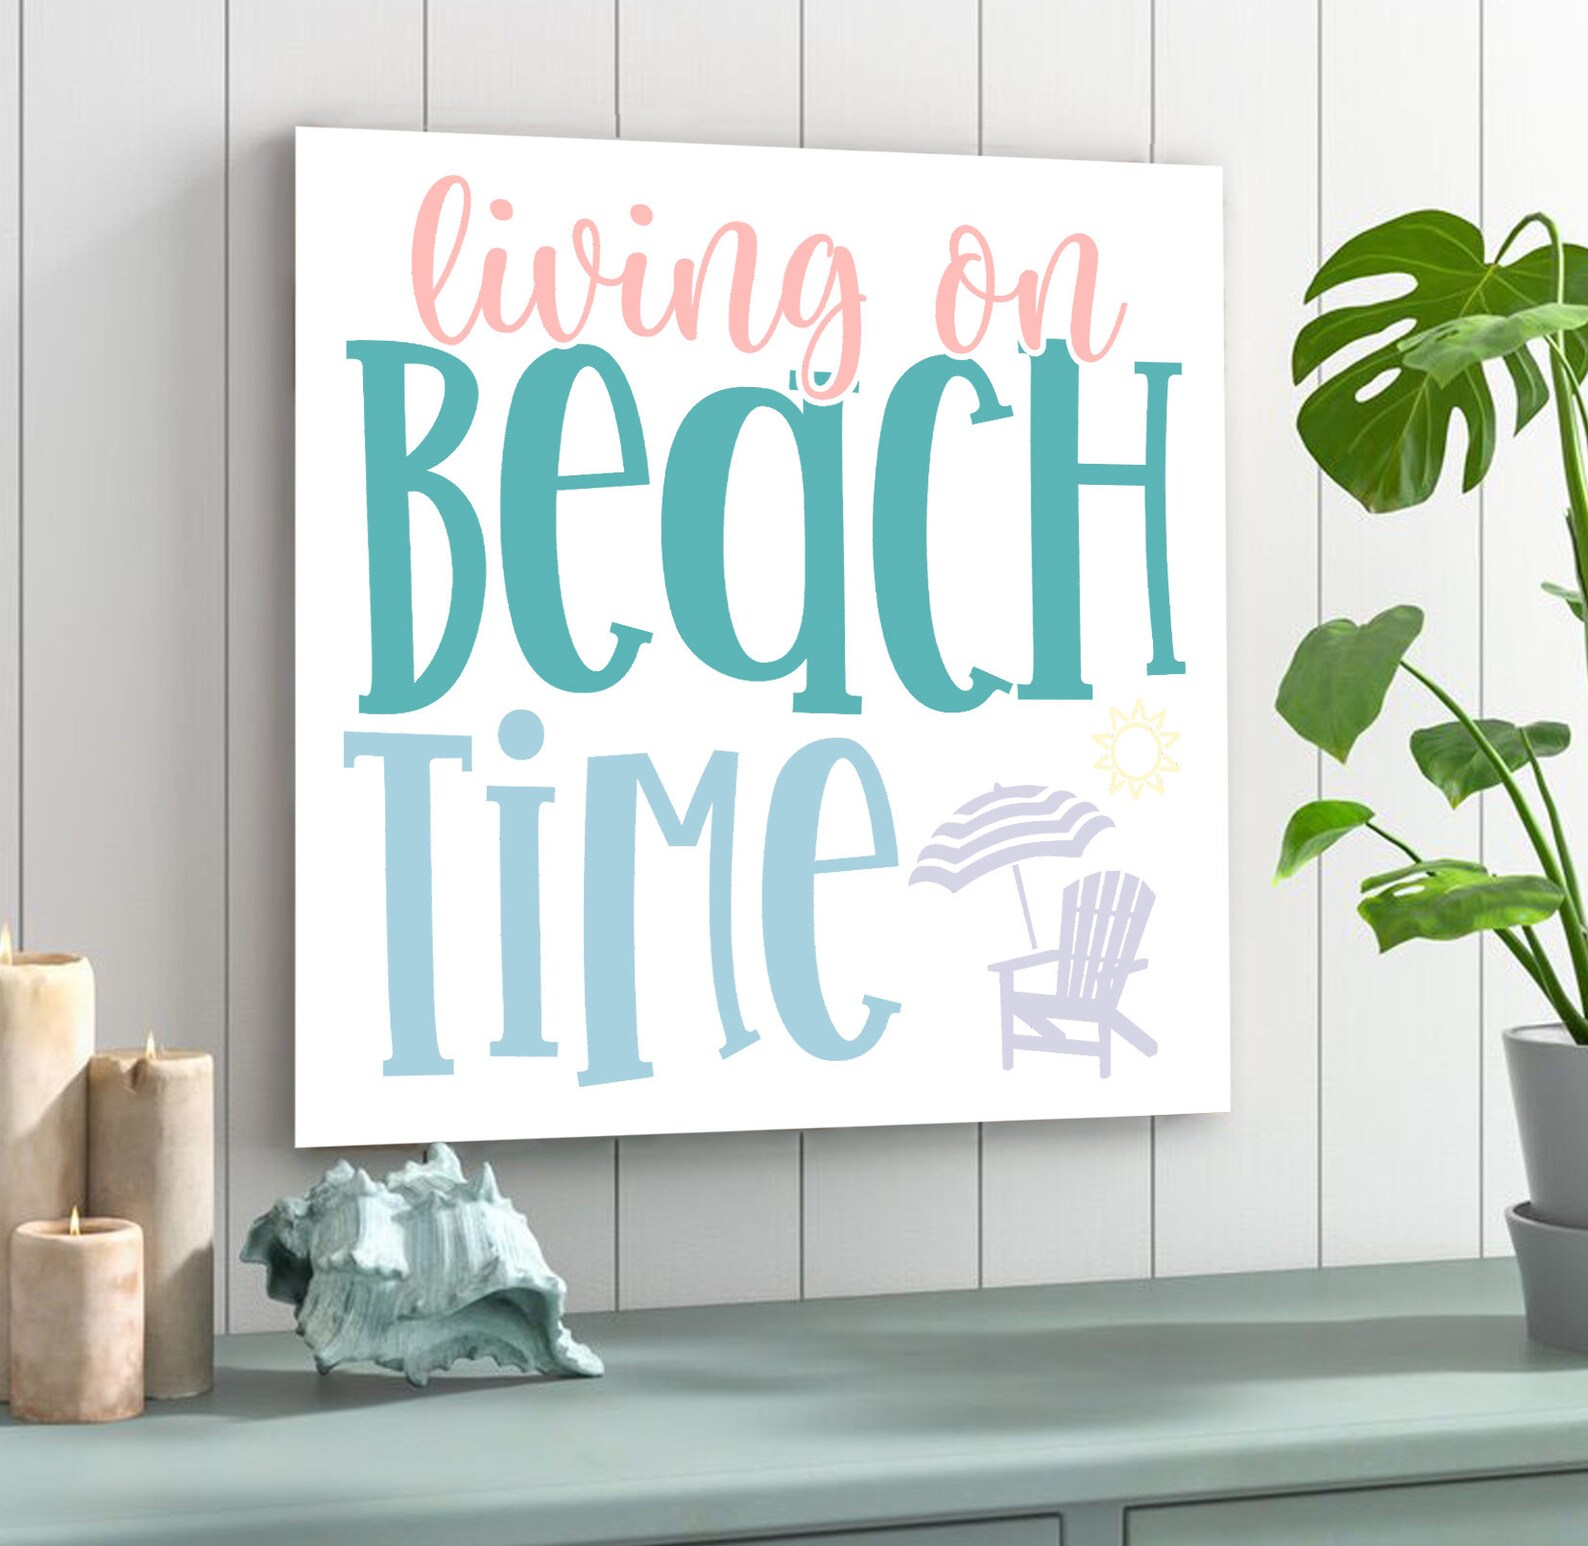 Ocean Home Decor Living on Beach Time Sign Beach Decor | Etsy